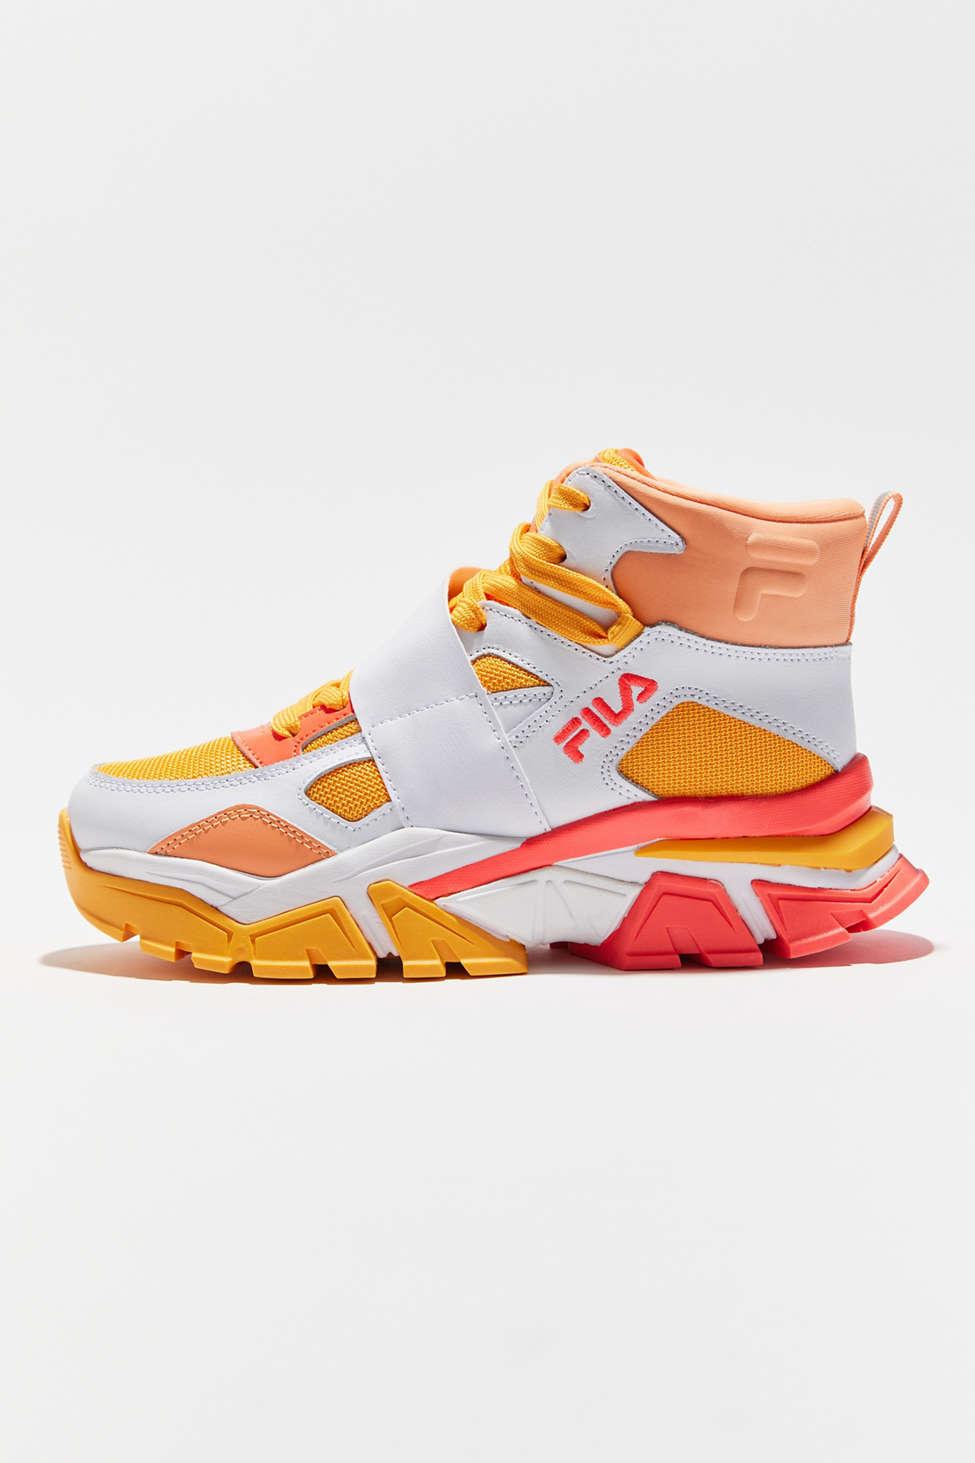 Fila Men's Renno Sneakers Camo/Chive/Red Orange Sz. 9 1CM01602 | JoyLot.com